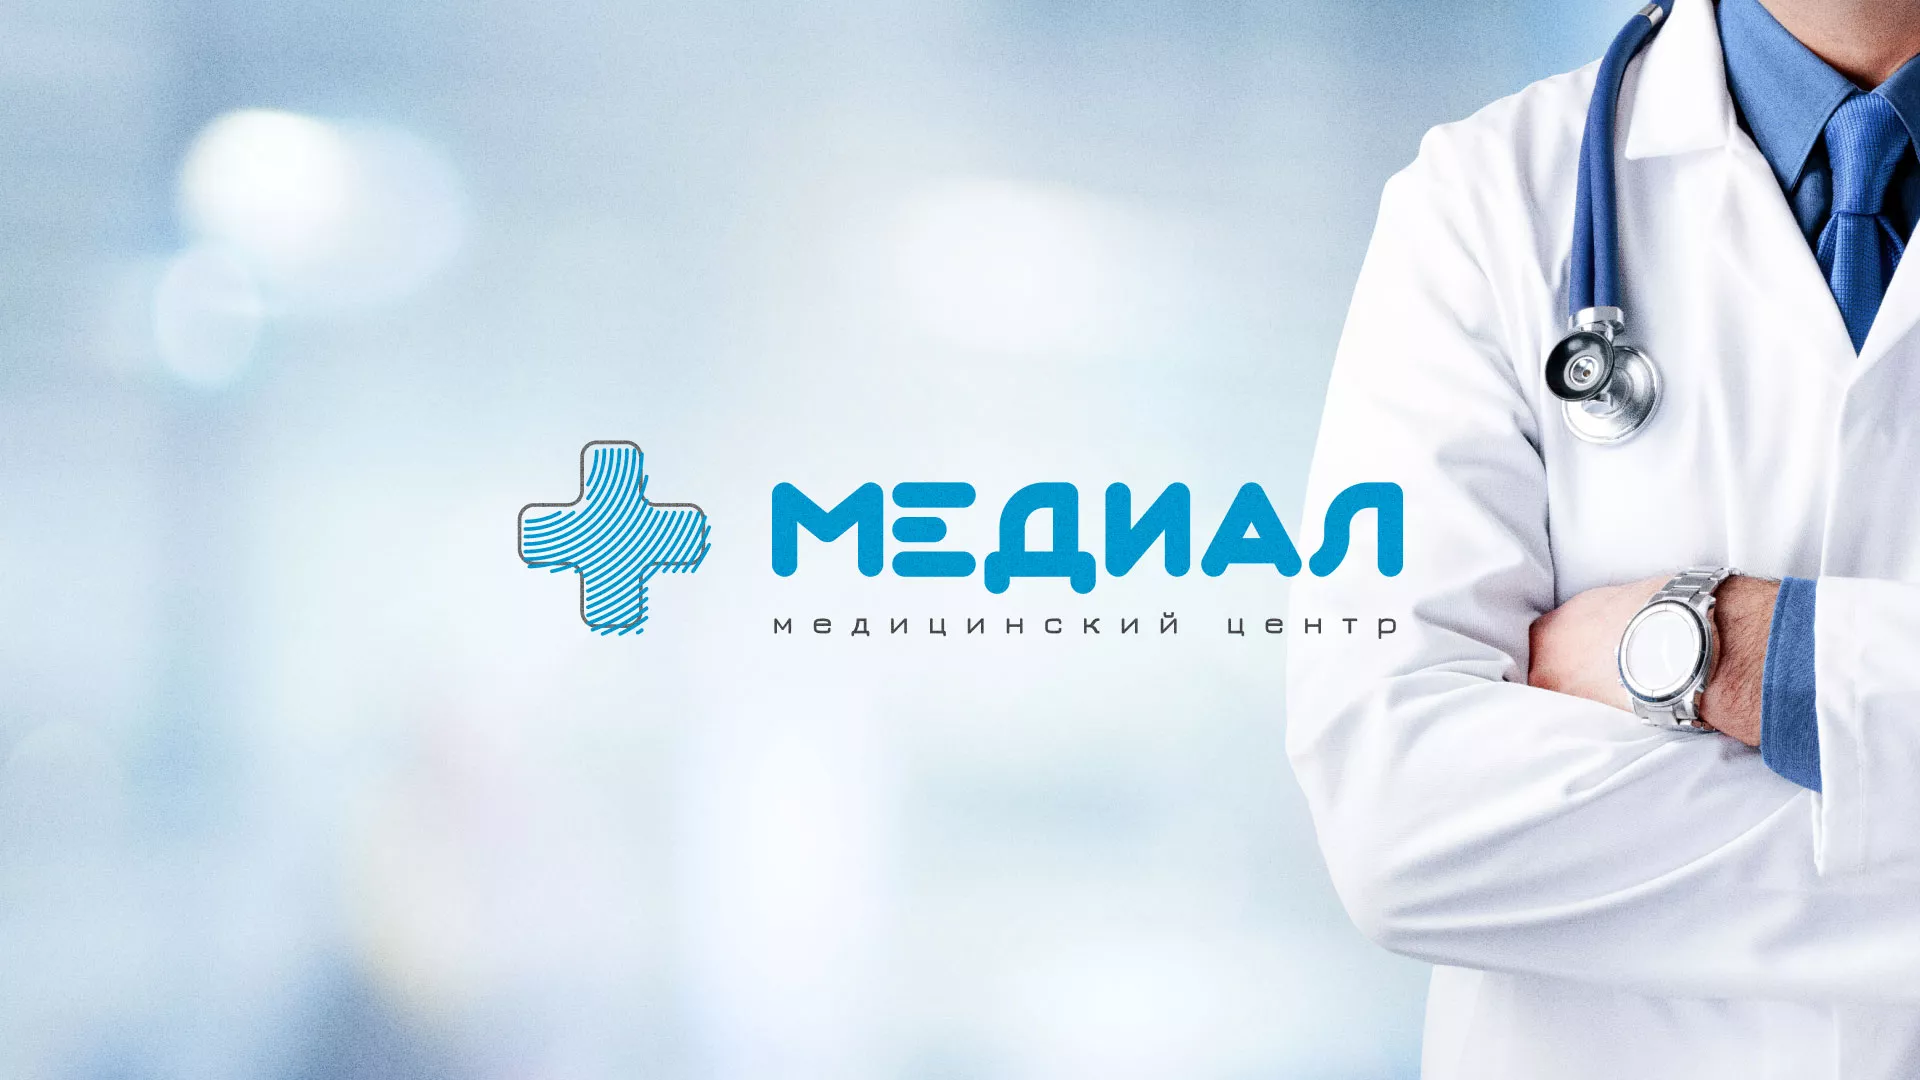 Создание сайта для медицинского центра «Медиал» в Щиграх